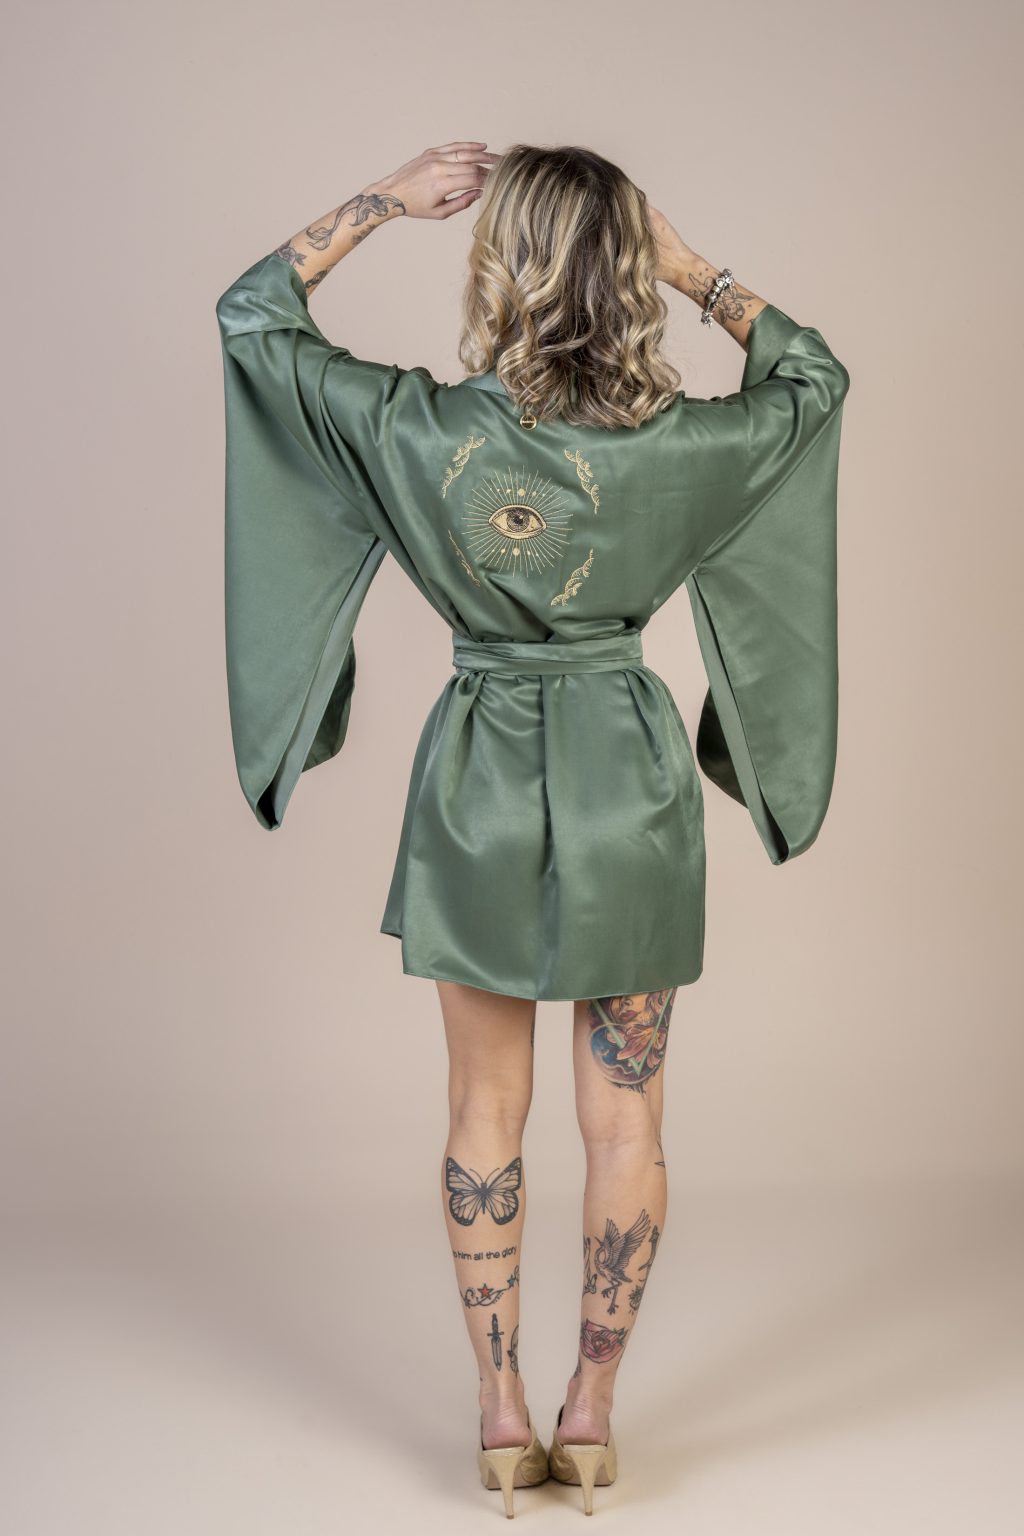 Mulher loira usando um kimono curto manga longa verde de viscose com bordado nas costas faixa para amarração na cintura exclusivo praticidade elegância conforto maria sanz kimono quimono